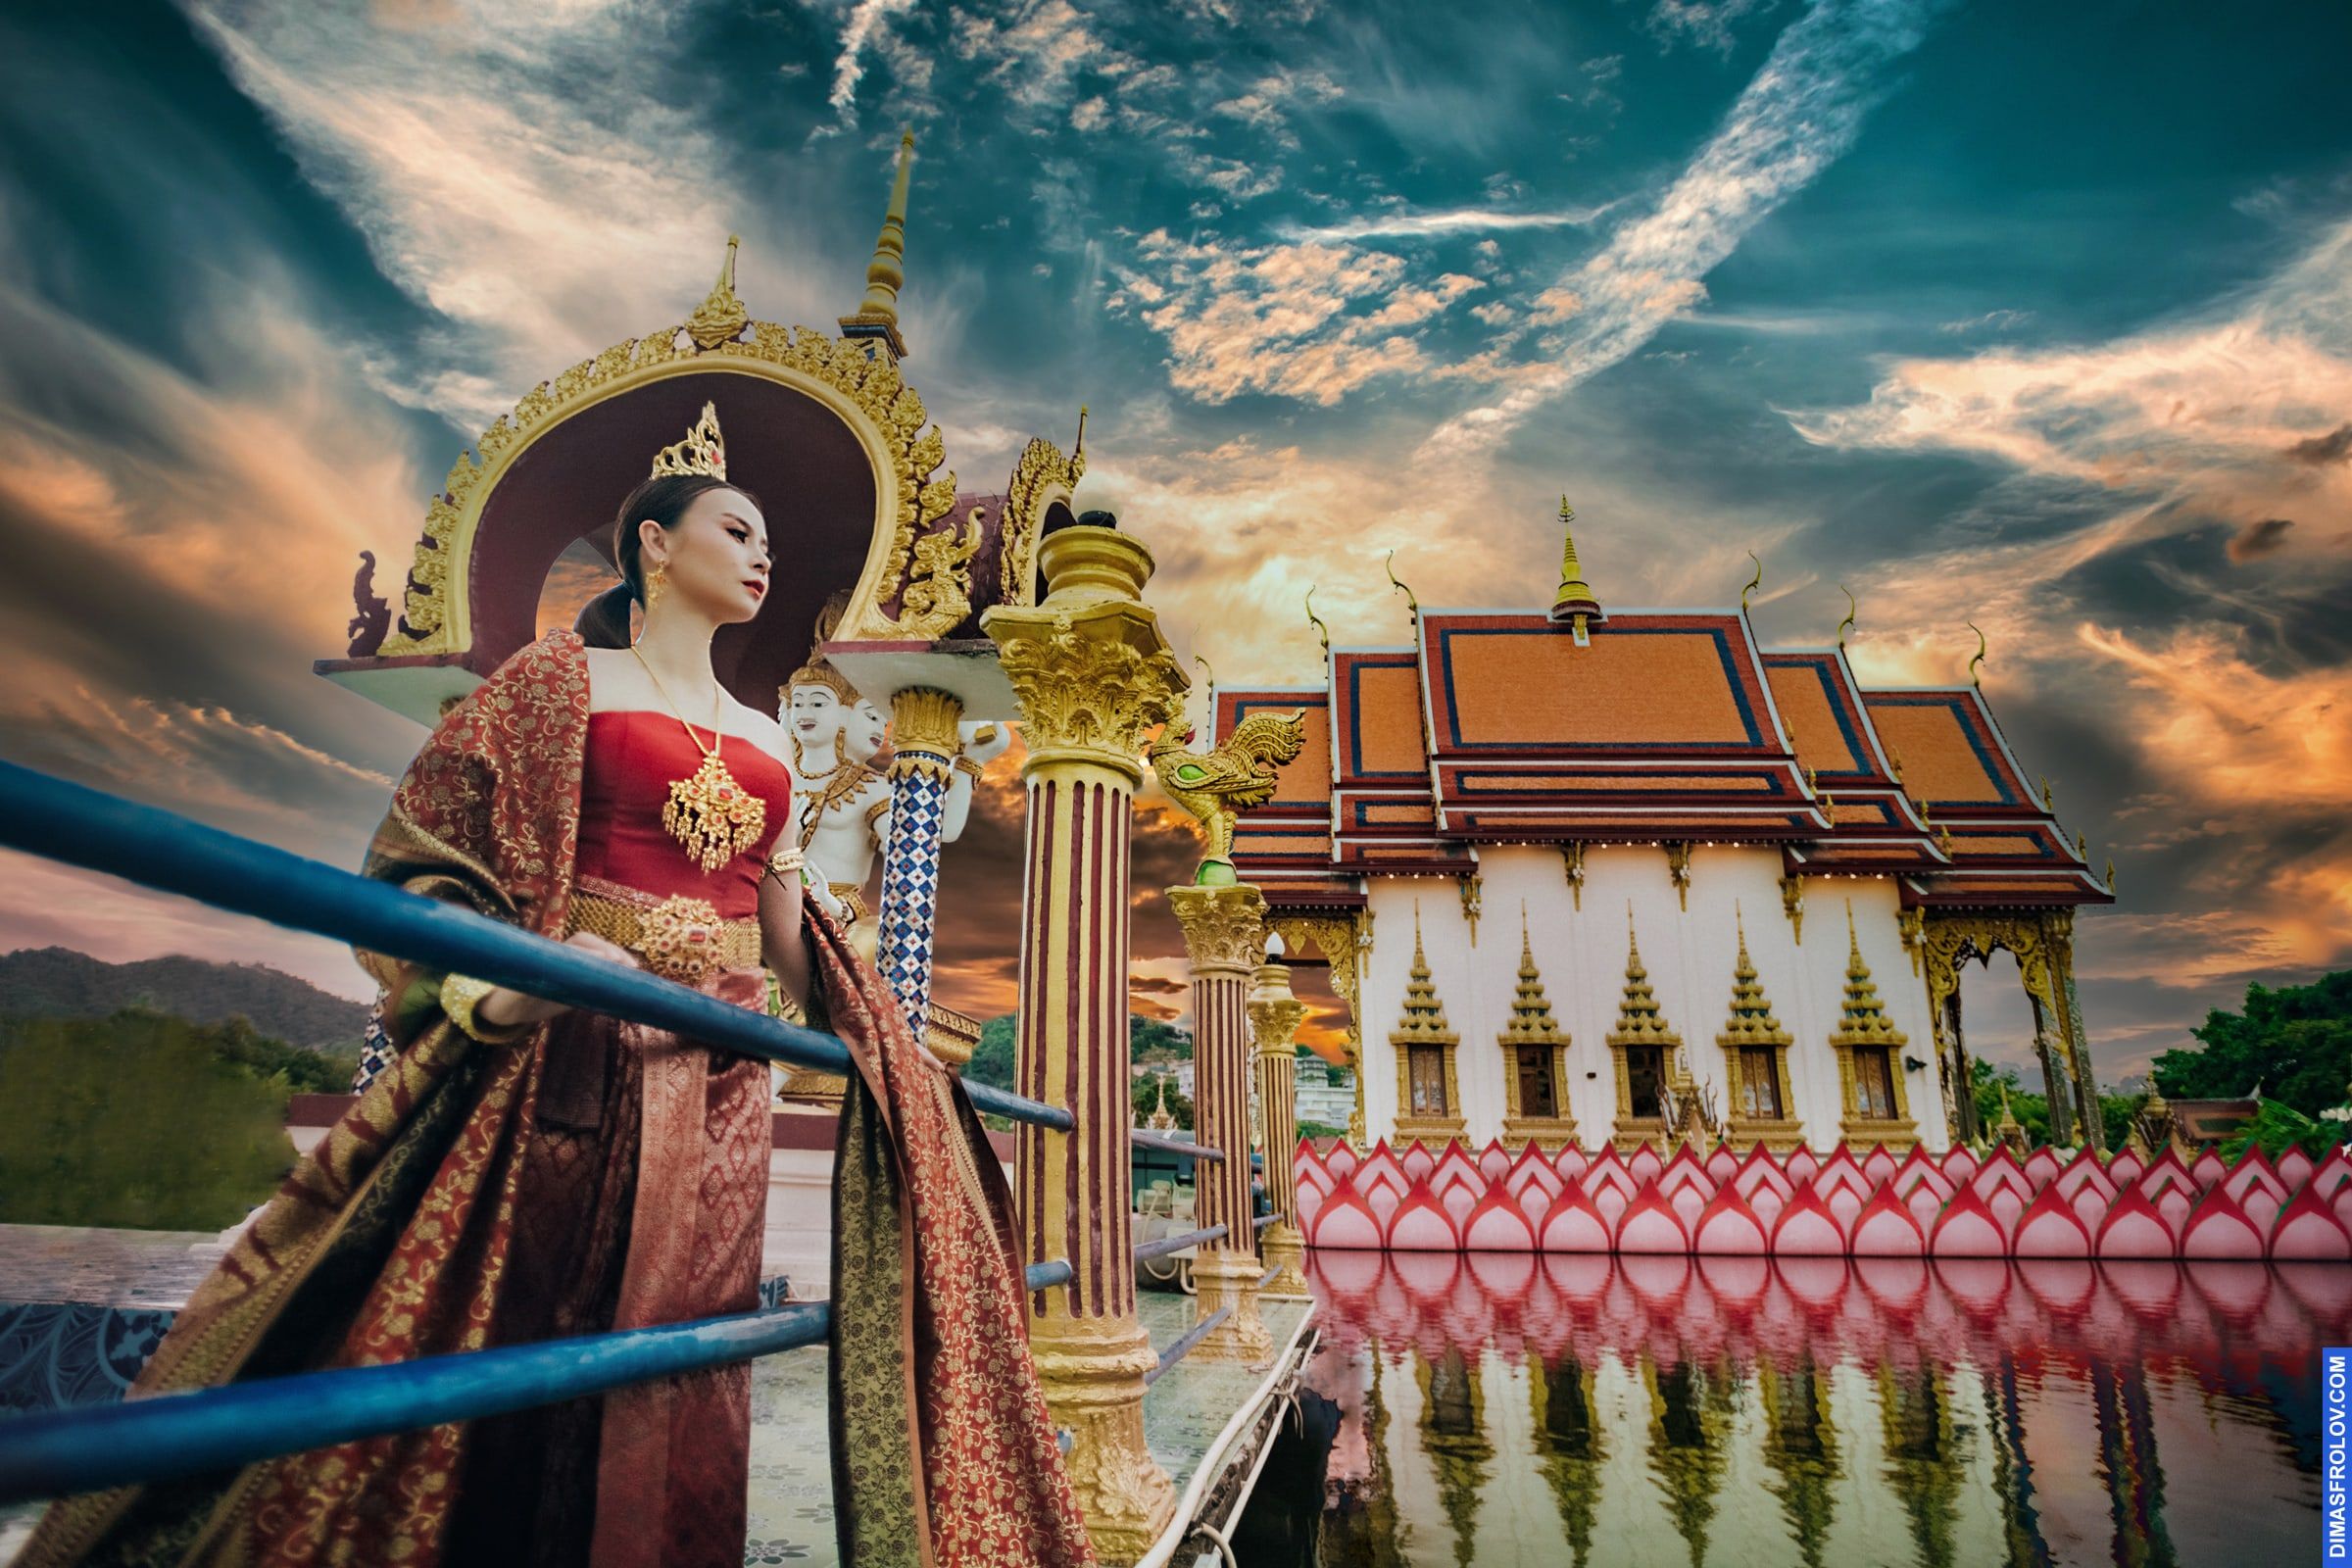 Pictures for post about Samui Photo shoot location: Wat Plai Laem Temple